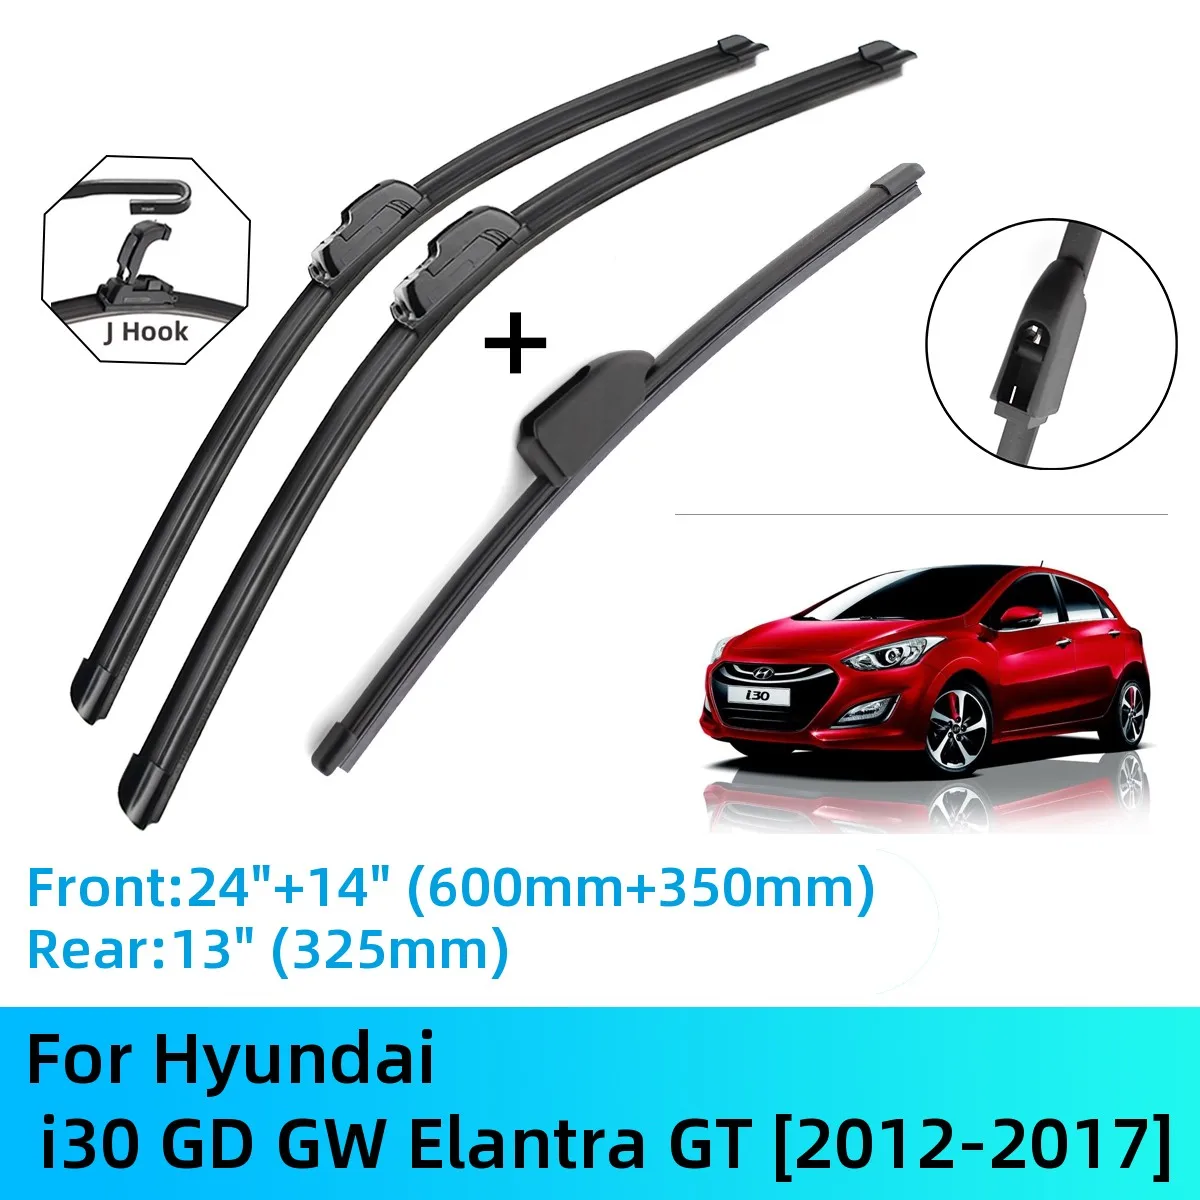 

Щетки стеклоочистителя для Hyundai i30 GD GW Elantra GT, аксессуары для резака J U Hook 2012-2017 2012 2013 2014 2015 2016